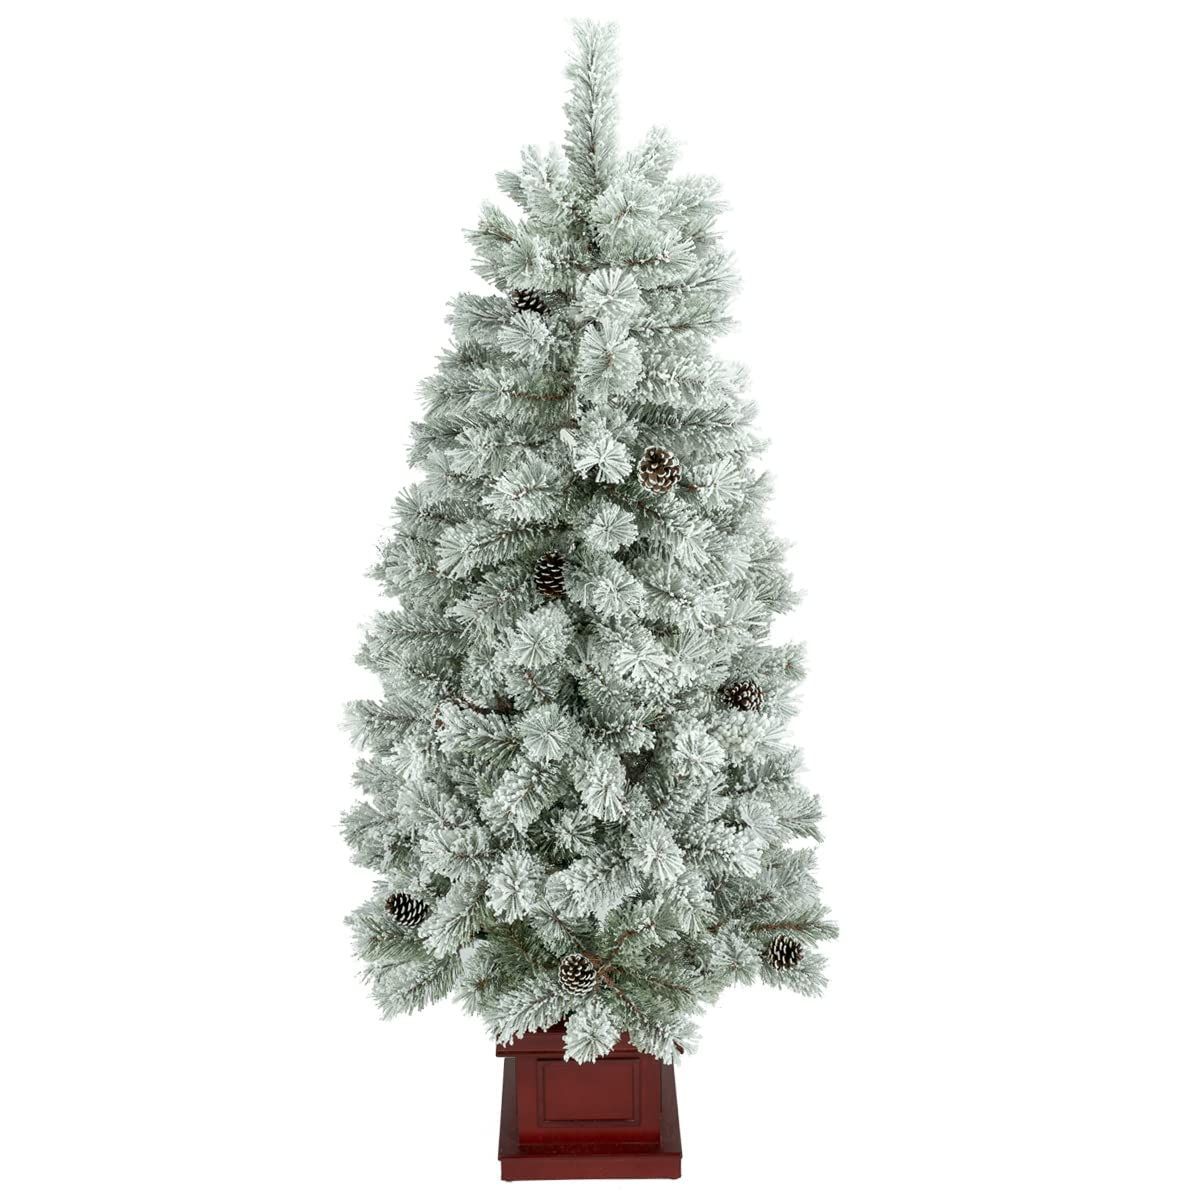 クリスマス屋 クリスマスツリー 180cm ポット スリム フロスト 雪 木製ポ